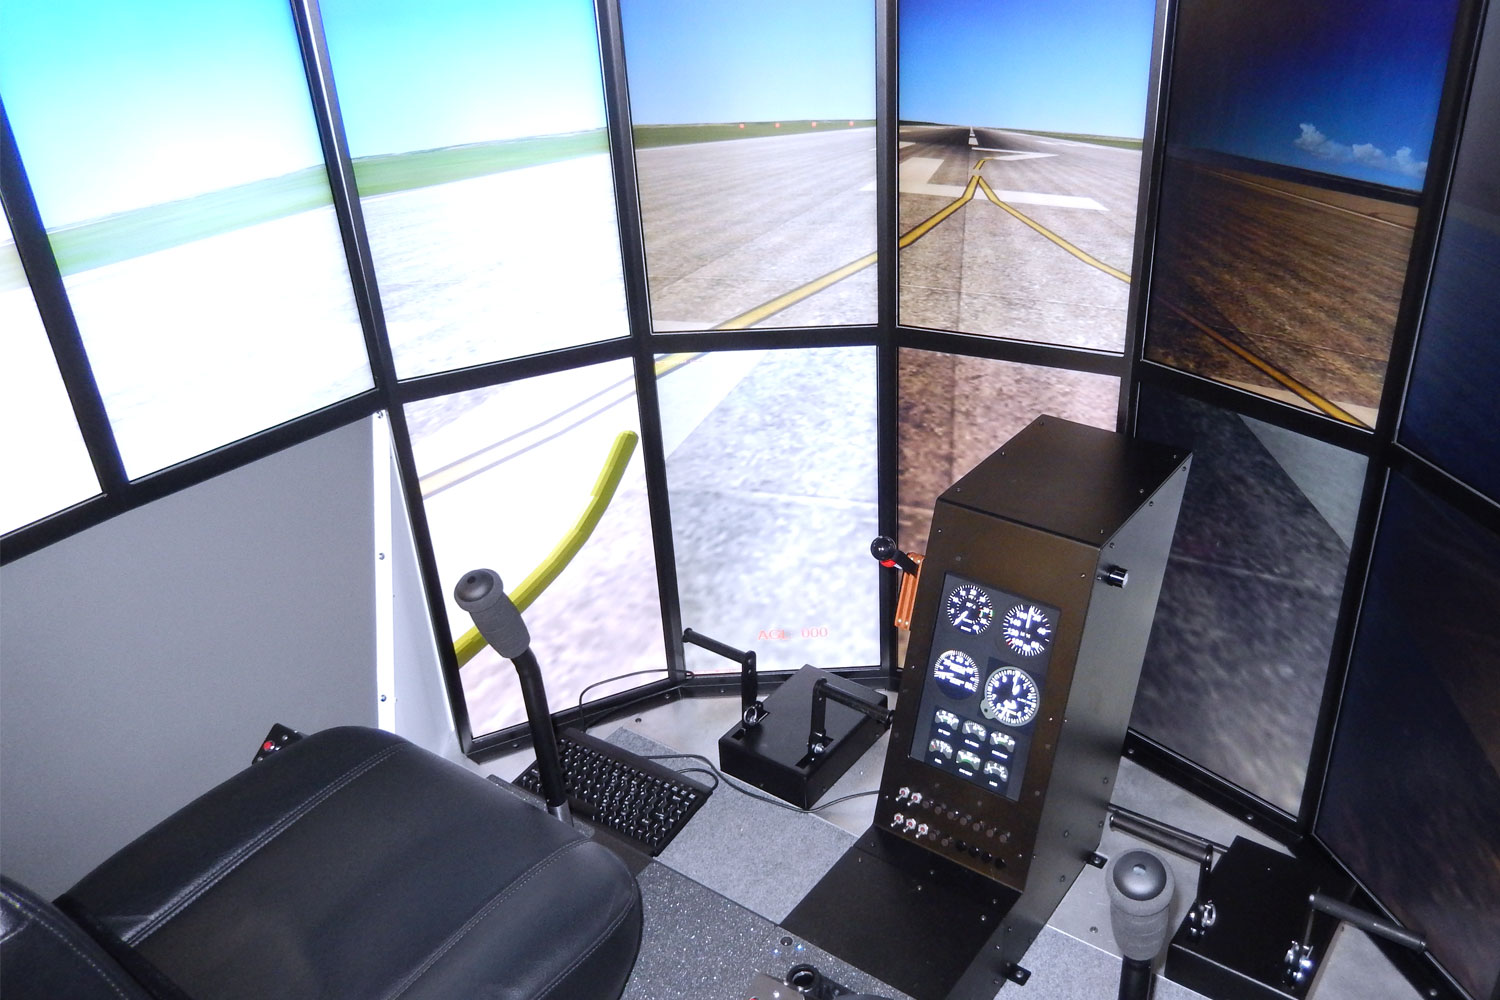 VR Full-Motion Helicopter Flight Simulators Have Arrived - VRScout